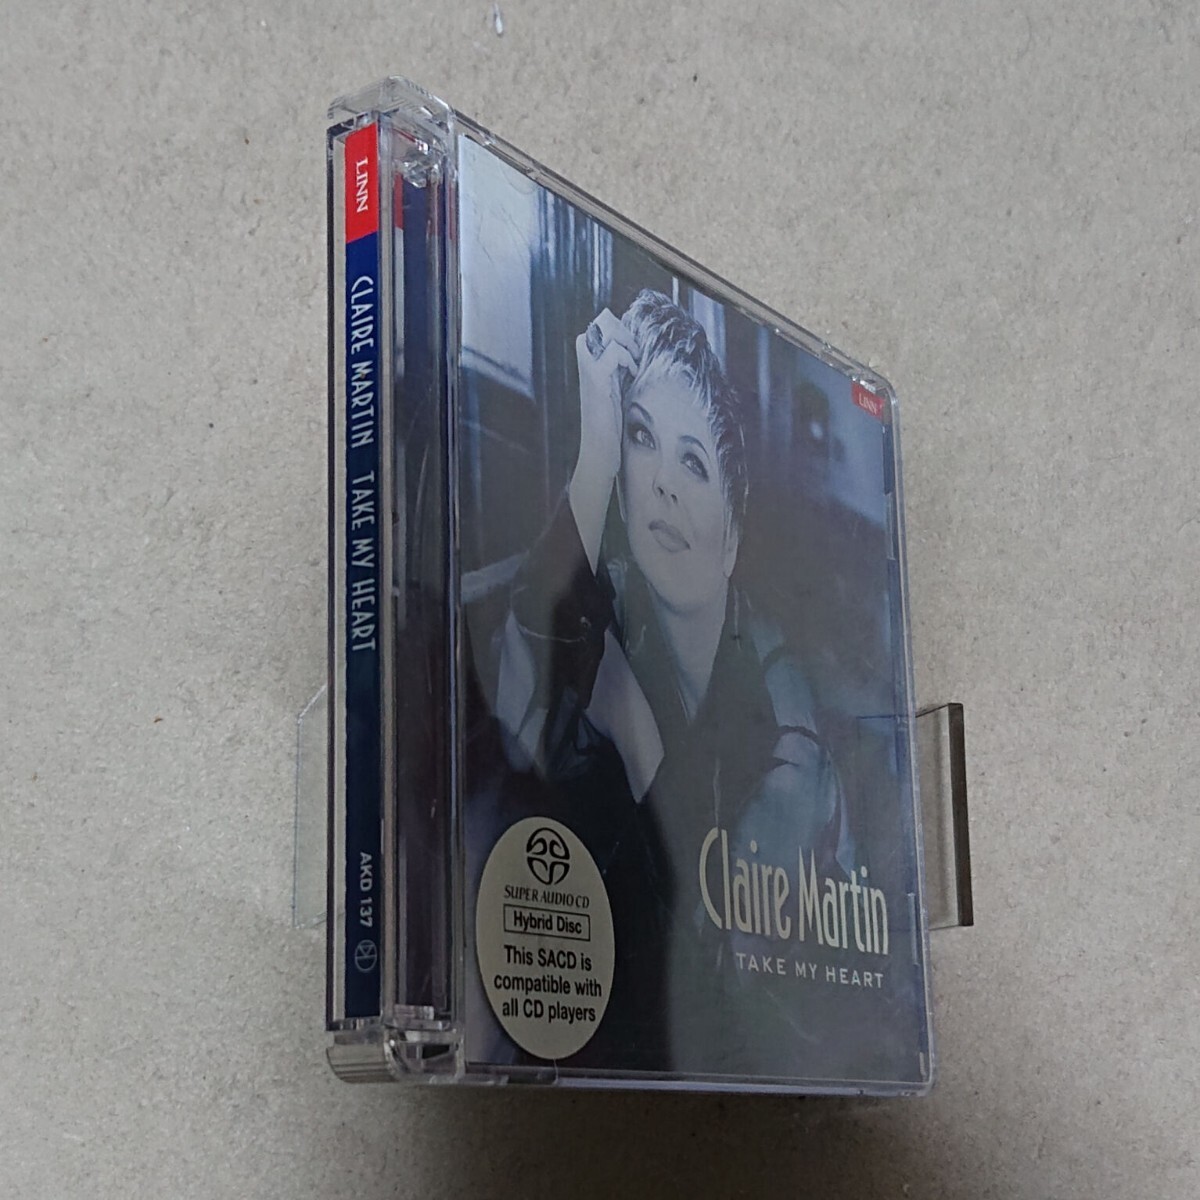 [CD] Crea * Martin Clare Martin/Take My Heart